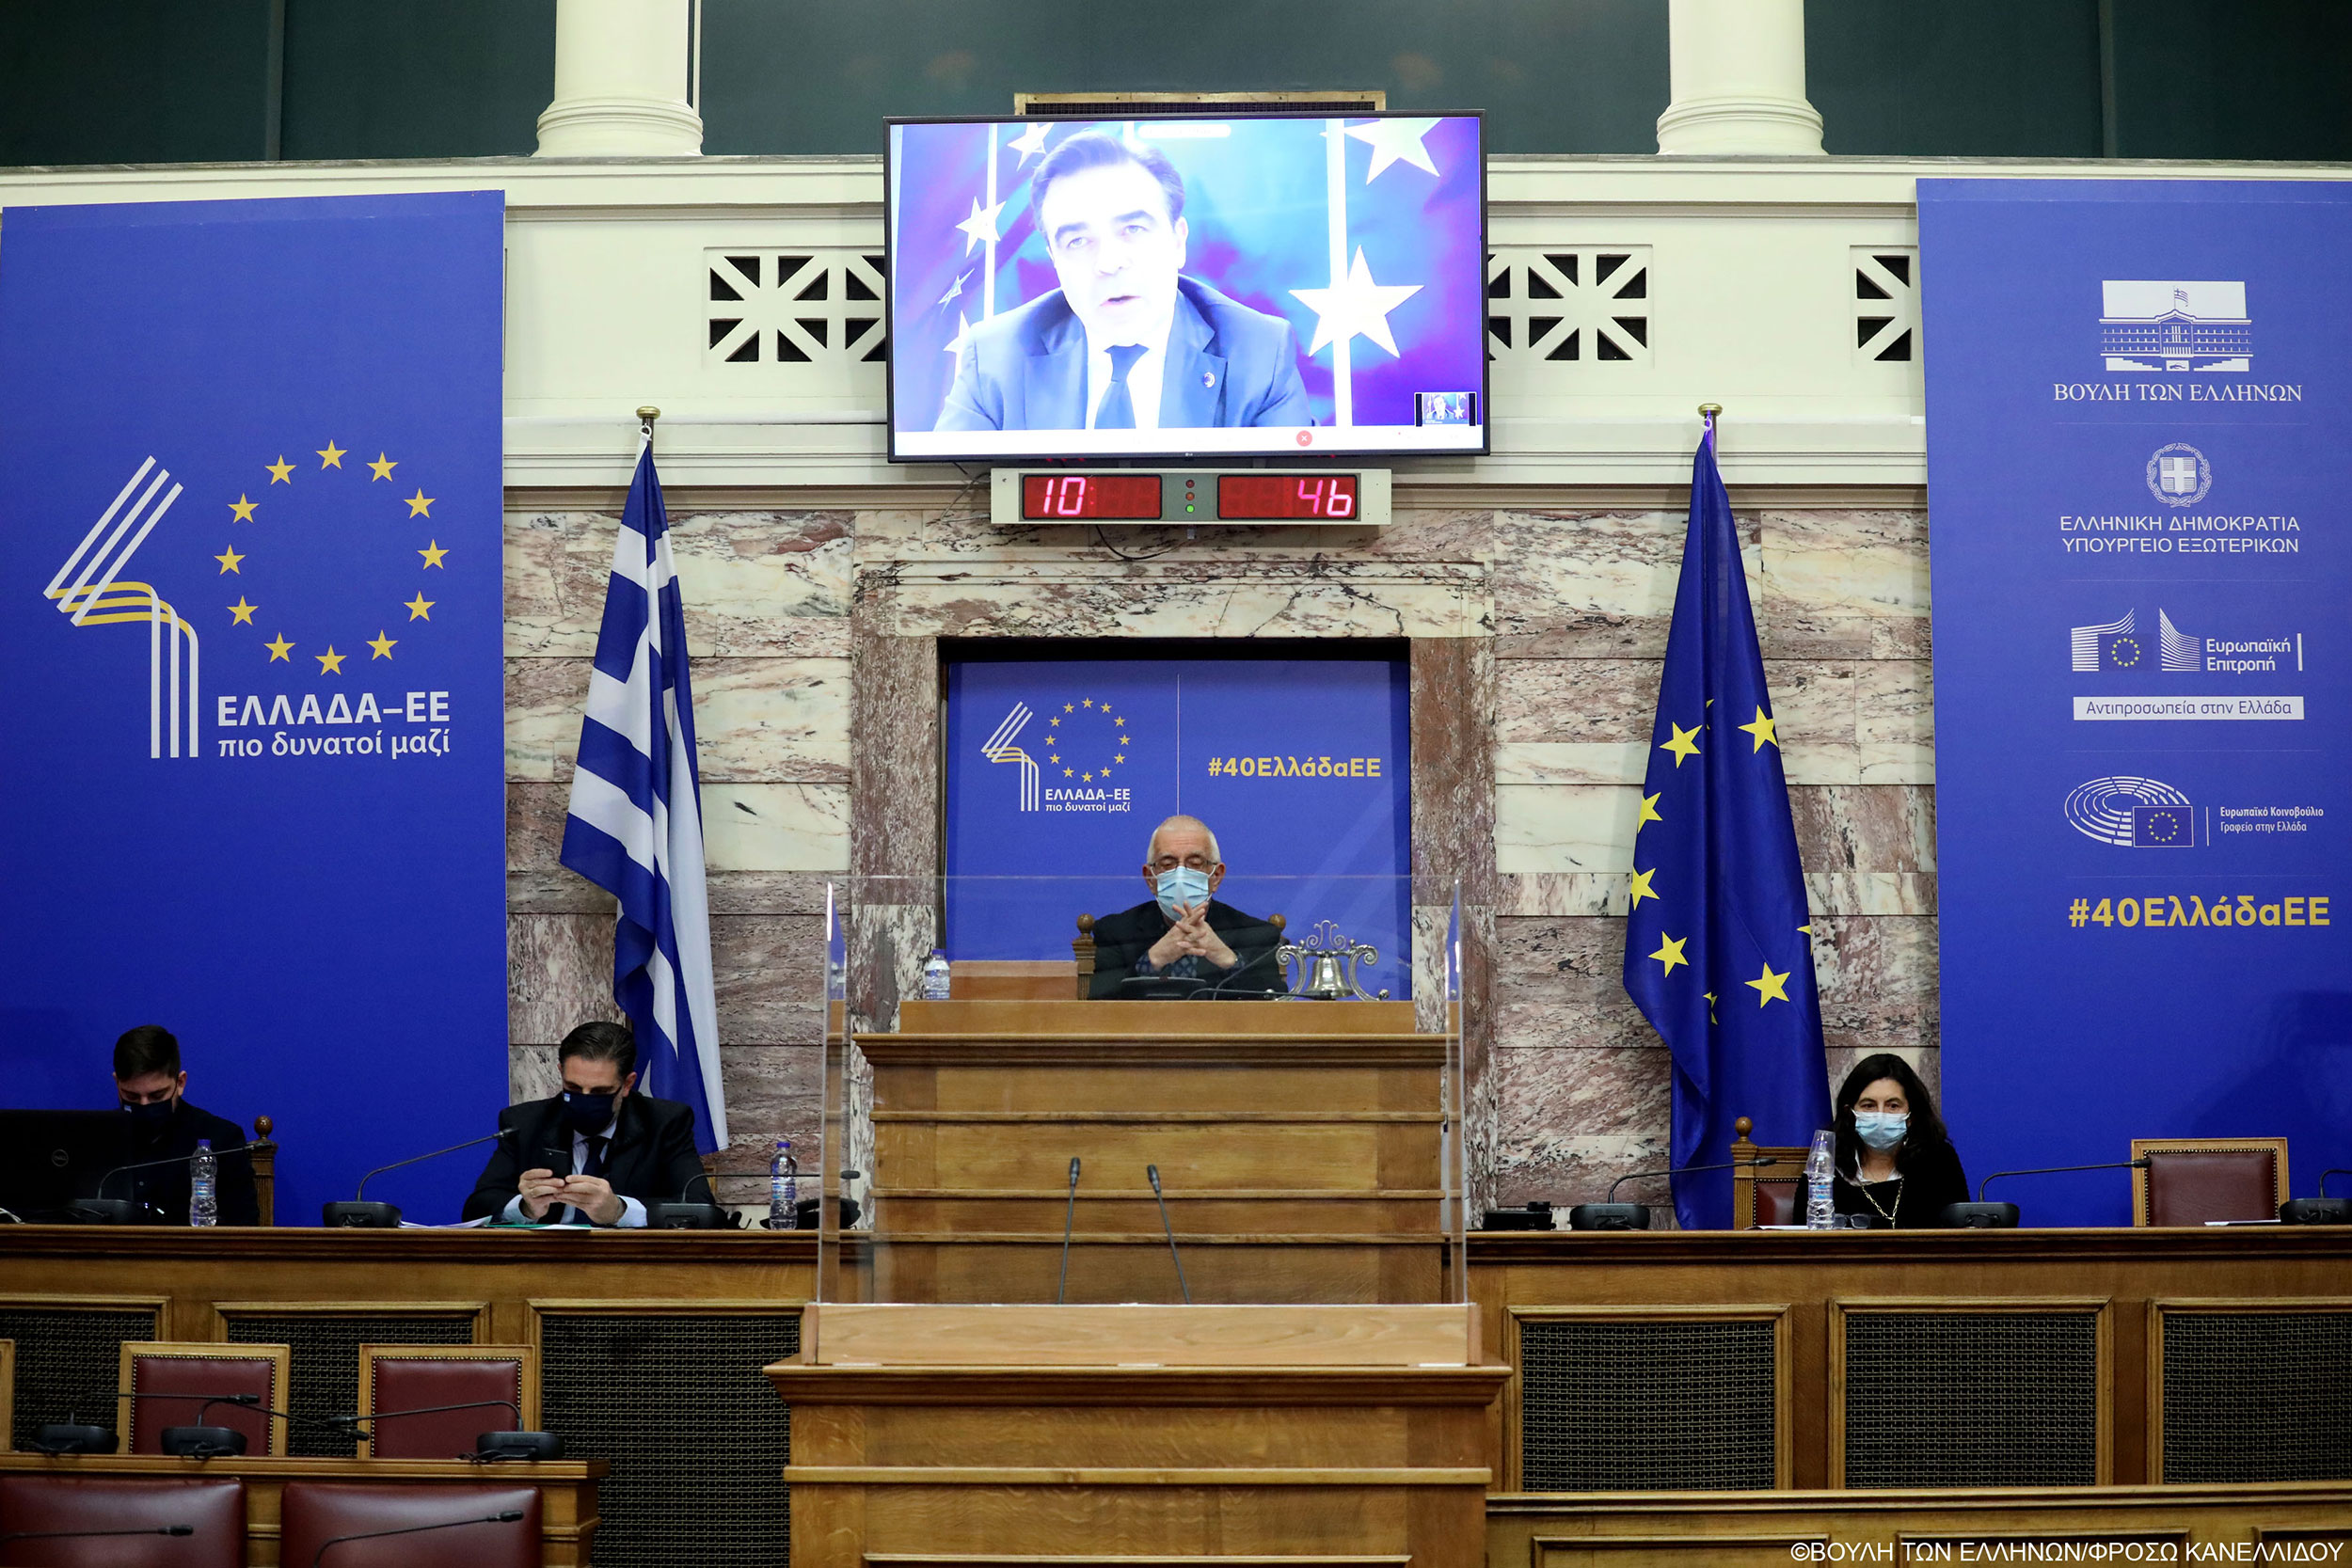 Ο αντιπρόεδρος της Κομισιόν Μαργαρίτης Σχοινάς μίλησε στην επετειακή εκδήλωση για τα 40 χρόνια από την ένταξη της Ελλάδος στην ΕΟΚ, λέγοντας: Η Ευρώπη «στήριξε την οικονομία και την κοινωνία σε κρίσιμες στιγμές, όταν πολλοί άλλοι μας γύρισαν την πλάτη»